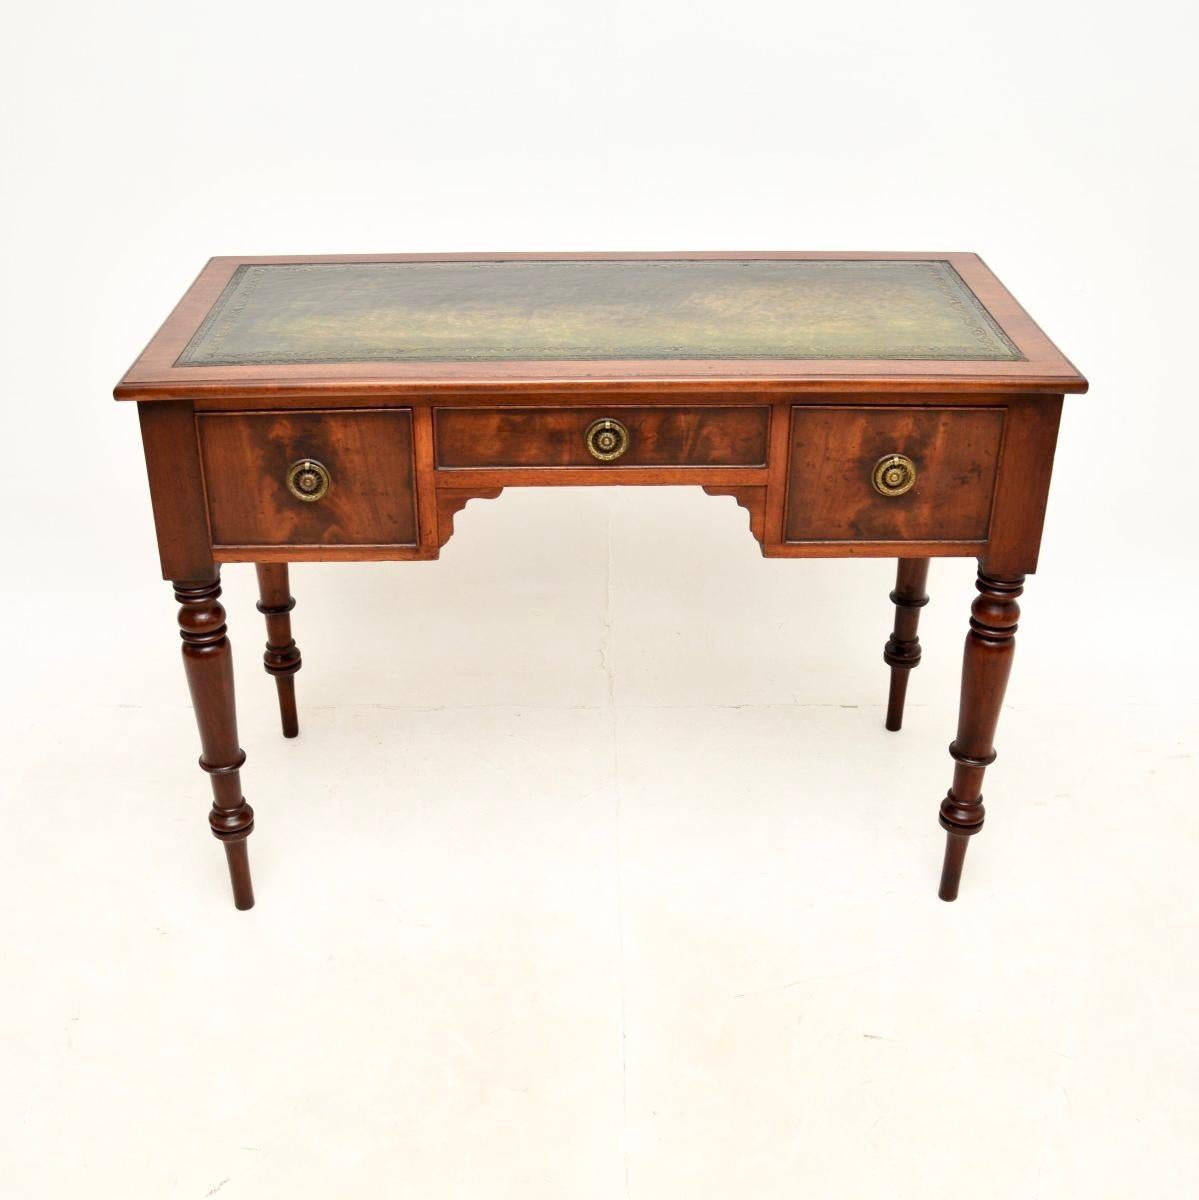 Une charmante table à écrire / bureau ancienne de style géorgien, très bien réalisée. Fabriqué en Angleterre, il date de la période 1800-1820.

Il est d'une superbe qualité et d'une taille très utile et pratique. Il repose sur des pieds joliment